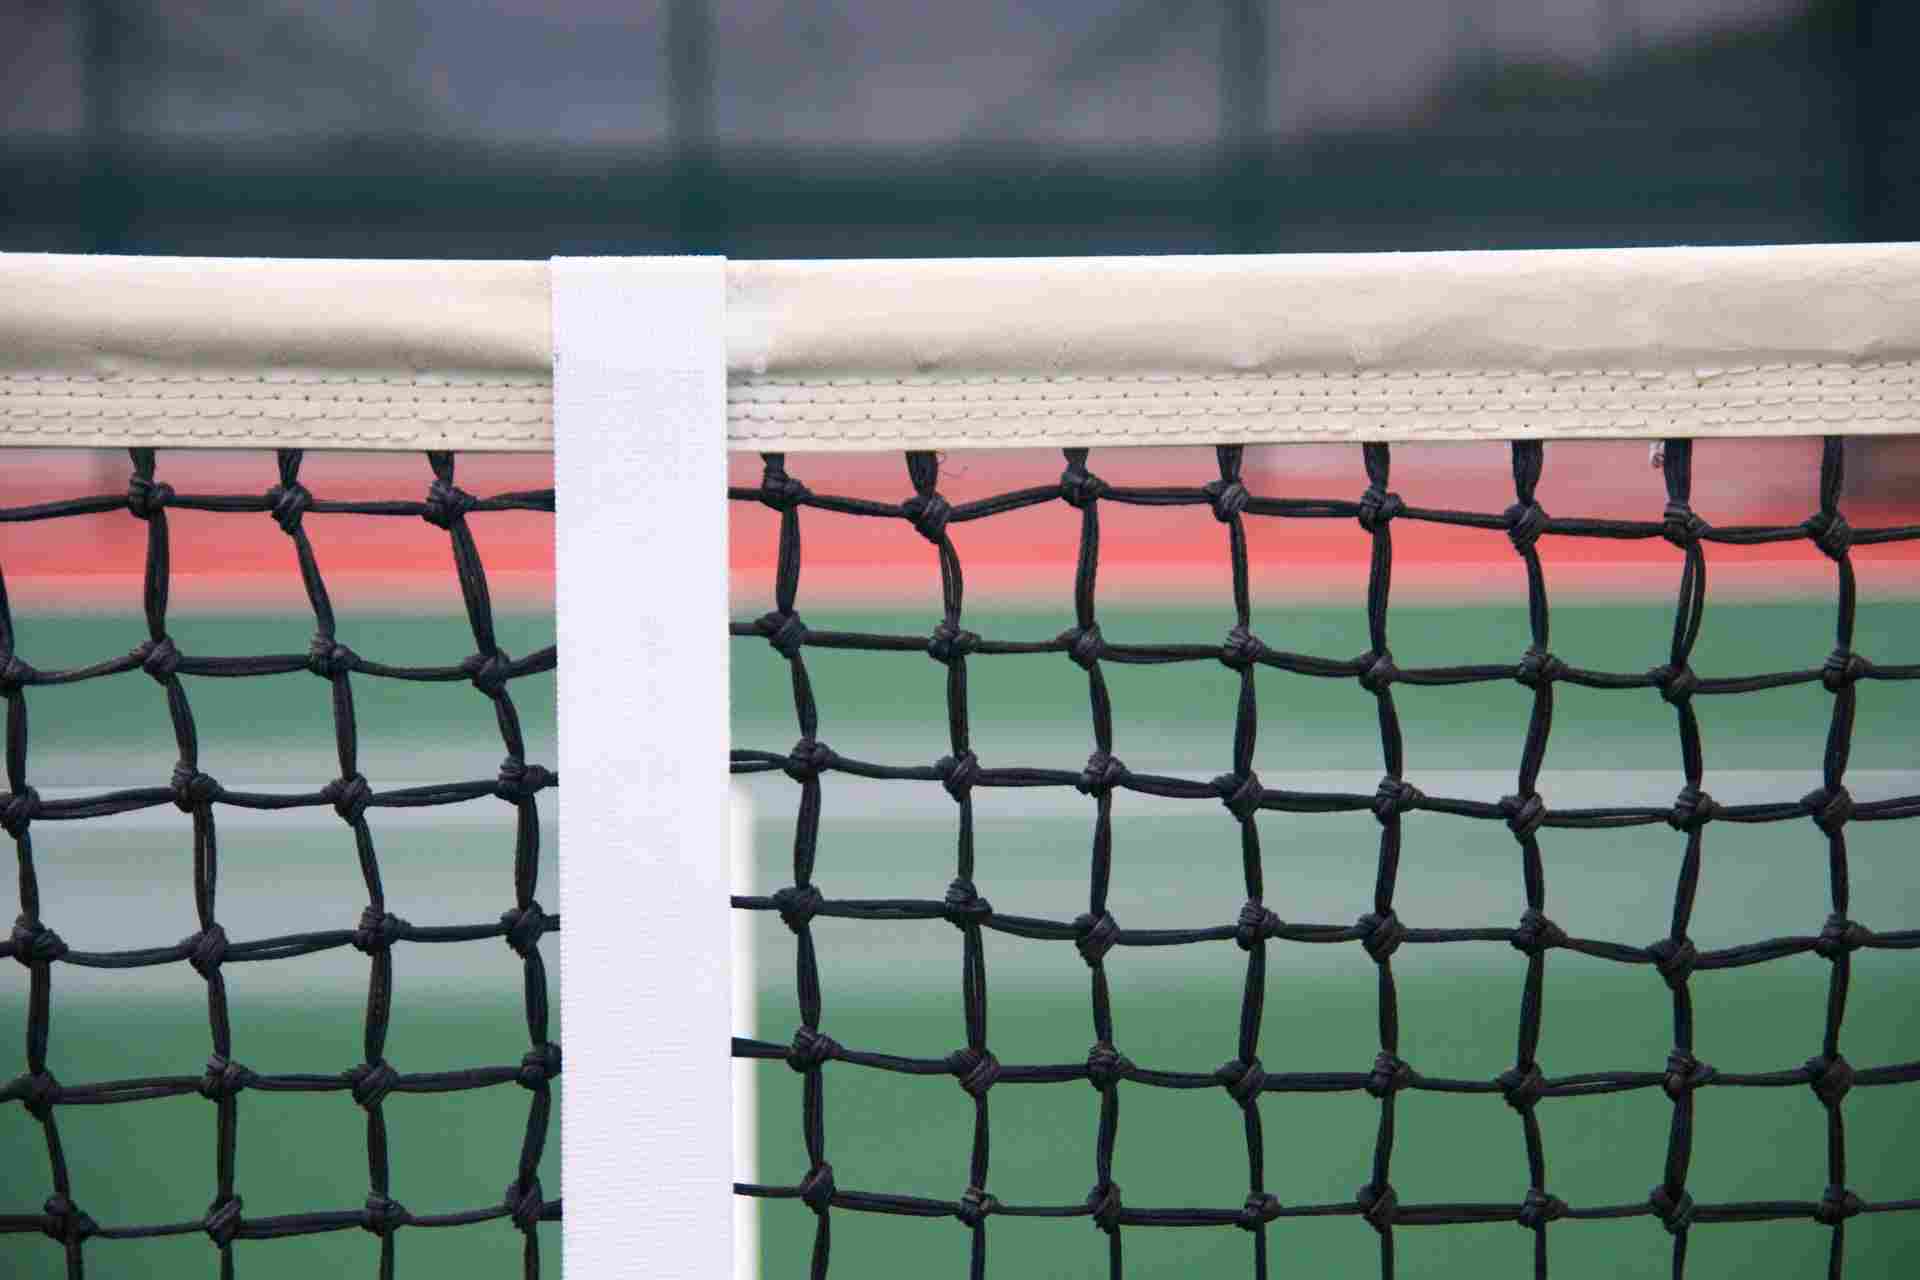 Rete tennis: materiale, lunghezza, quanto deve essere tesa